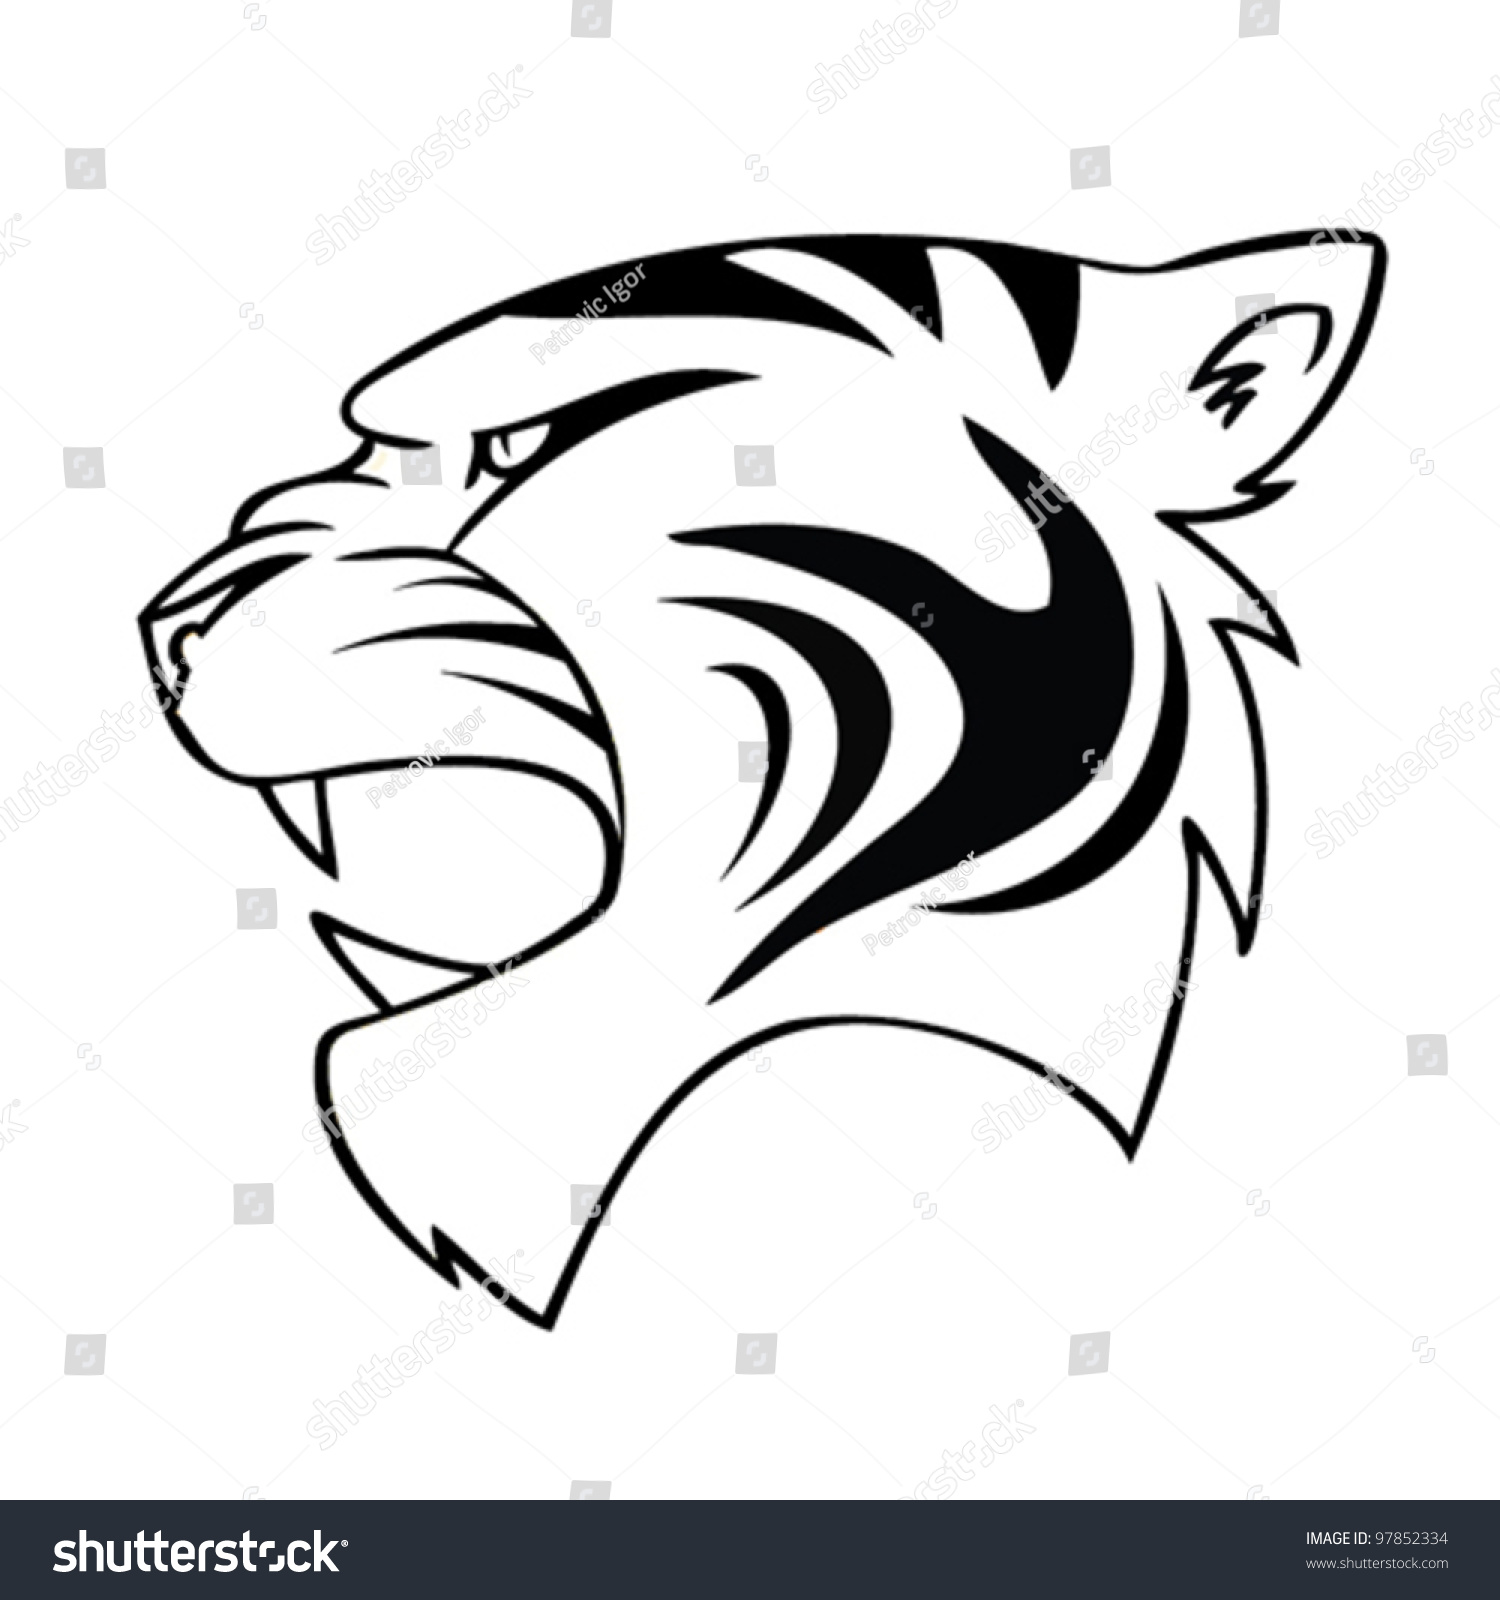 Isolated Cartoon Tiger Head - Vector Illustration - 97852334 : Shutterstock